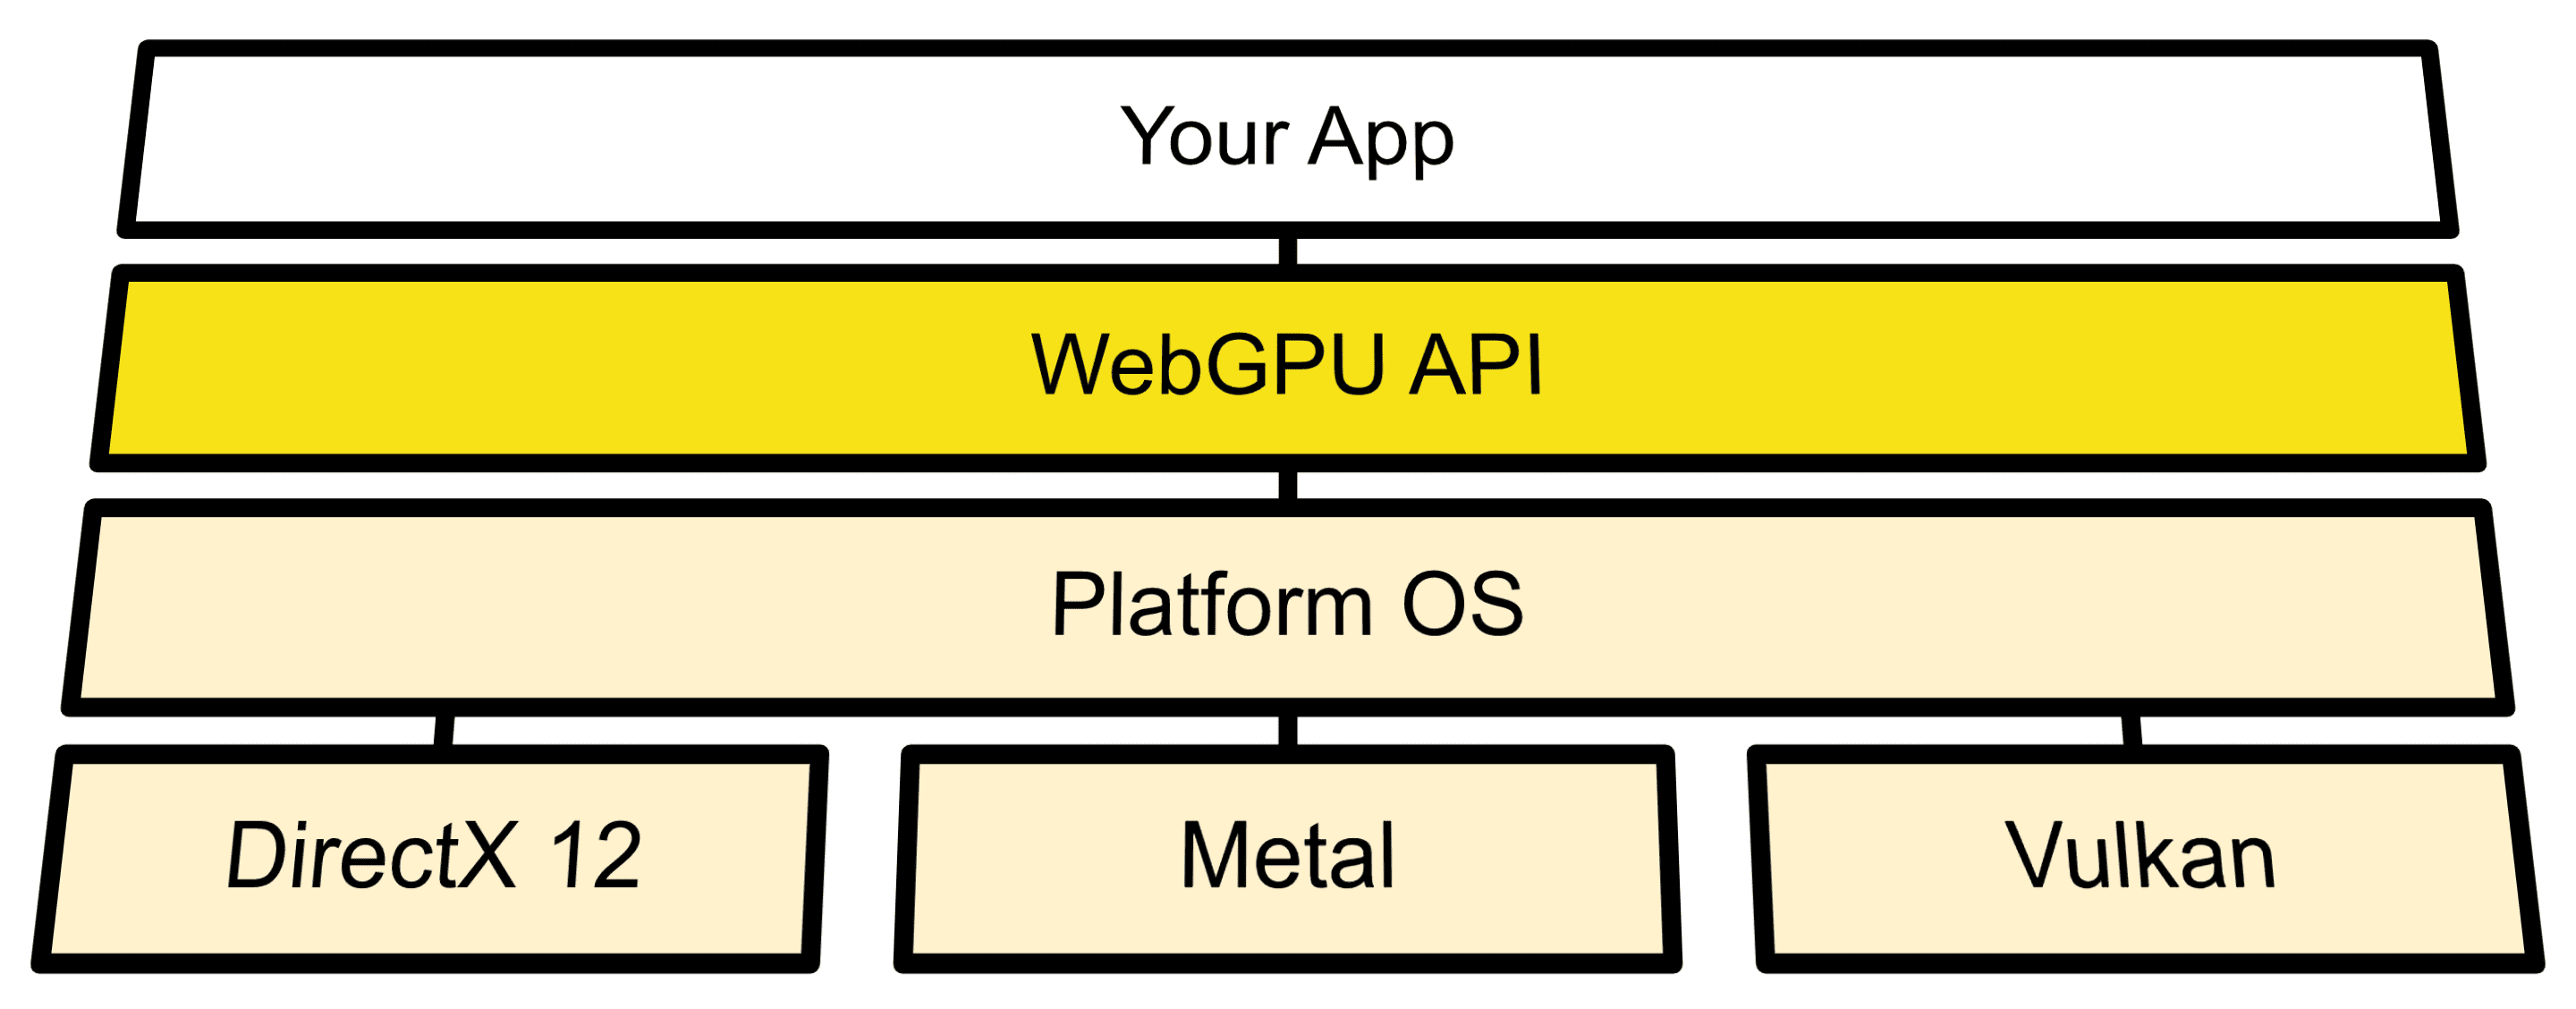 Diagrama de arquitectura que muestra la conexión de WebGPU entre las APIs del SO y Direct3D 12, Metal y Vulkan.